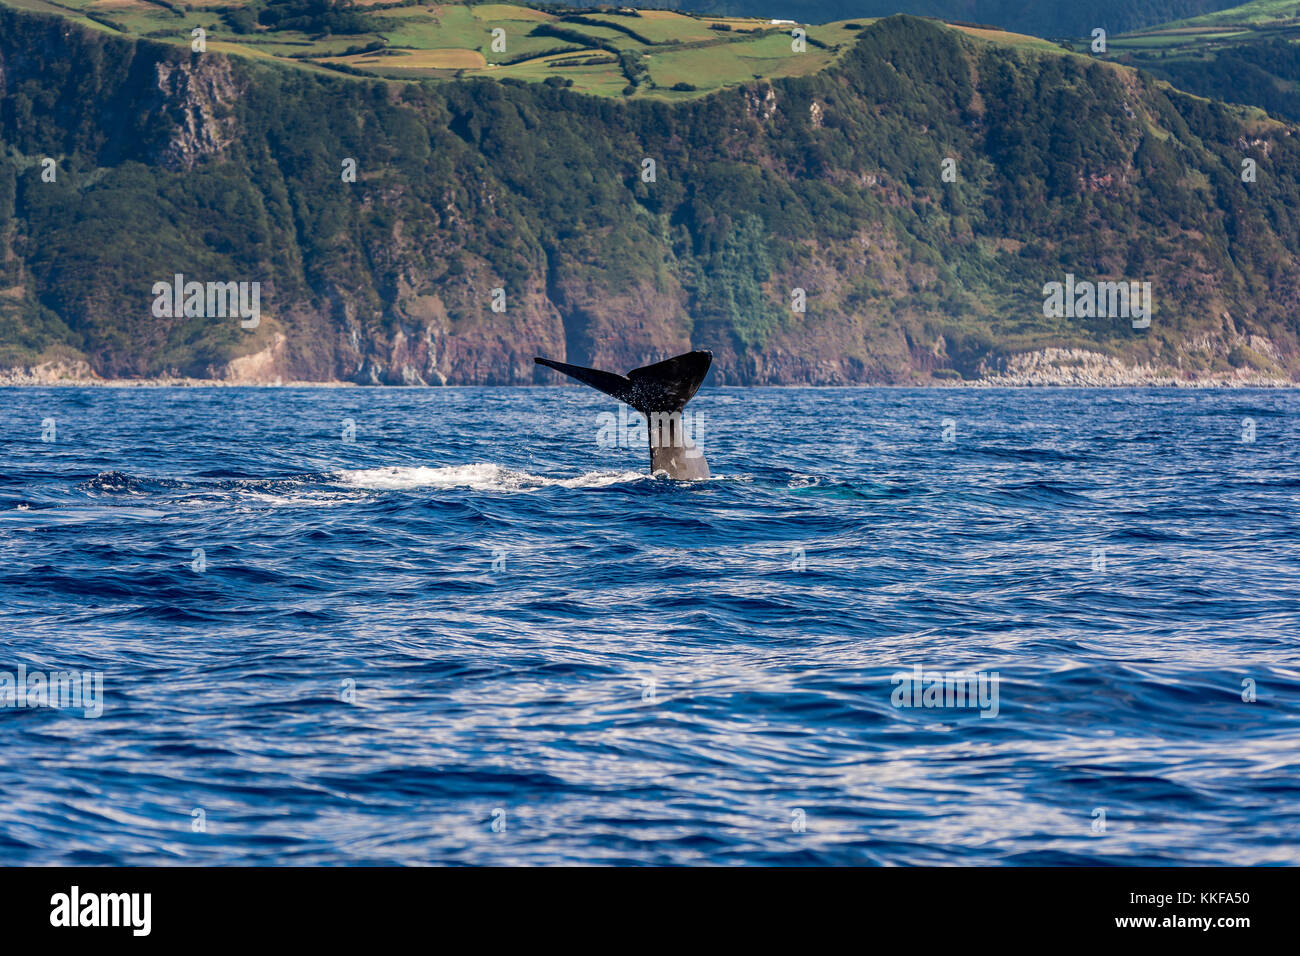 Un cachalot tale près de l'île de São Miguel, Açores, Portugal Banque D'Images